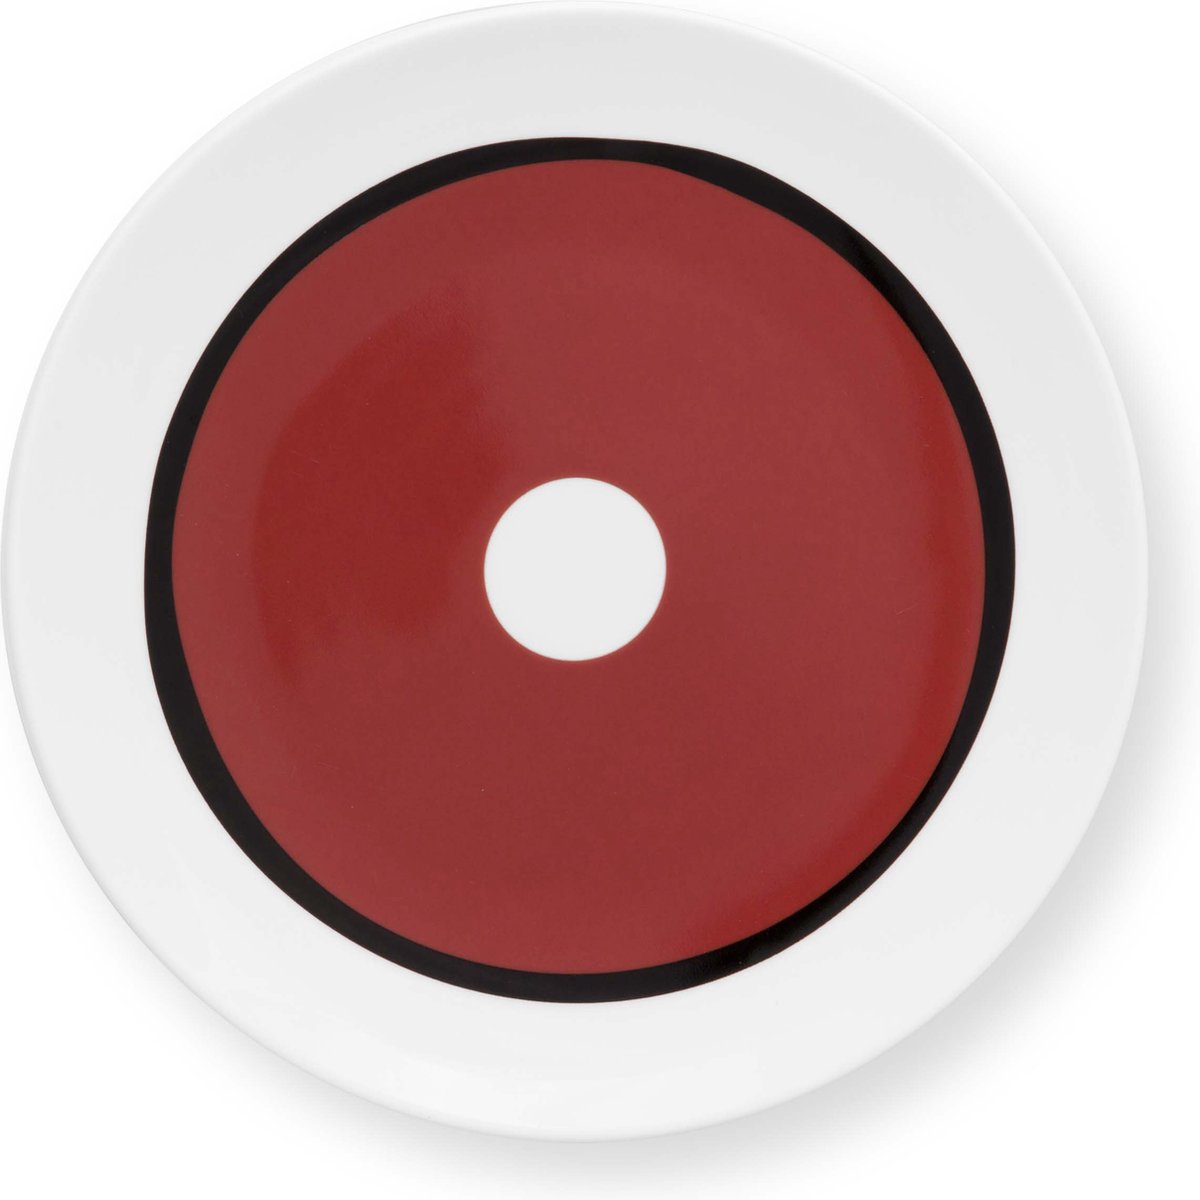 VT Wonen Circles Earth Red - gebaksbord - ⌀ 18cm - porselein - rode cirkel - rood servies